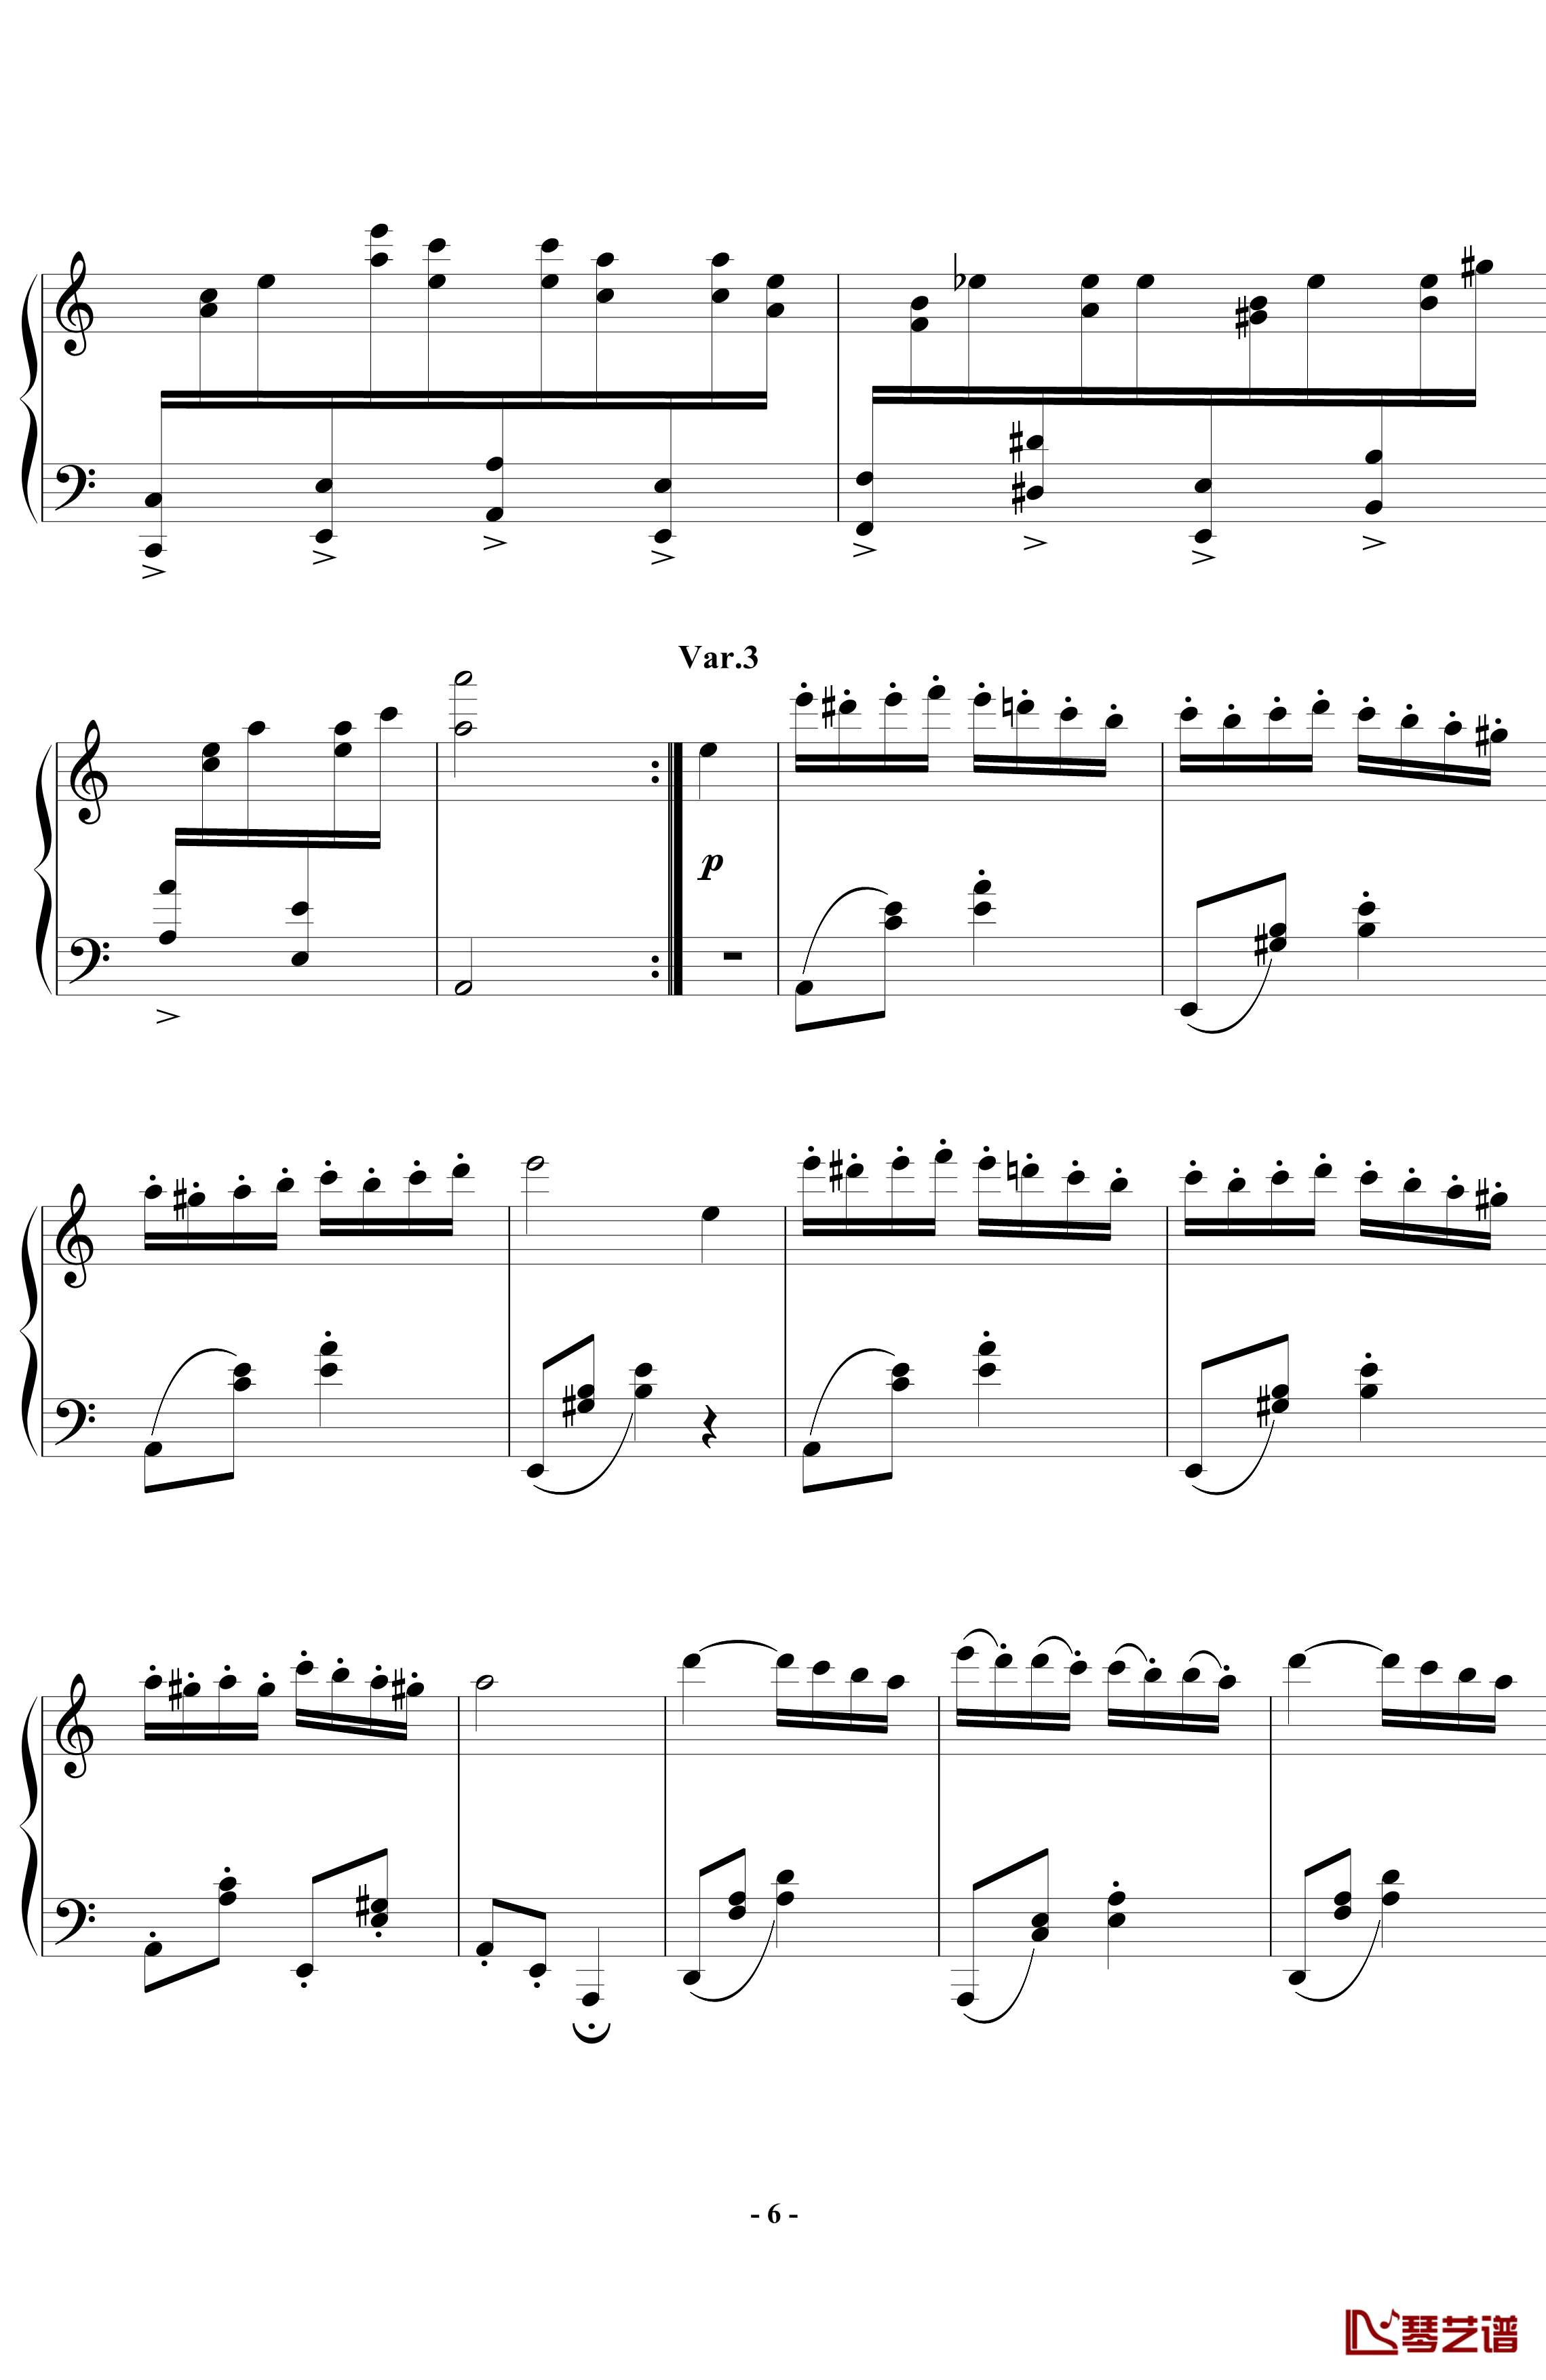 帕格尼尼飞絮曲钢琴谱-标准版-马克西姆-Maksim·Mrvica6